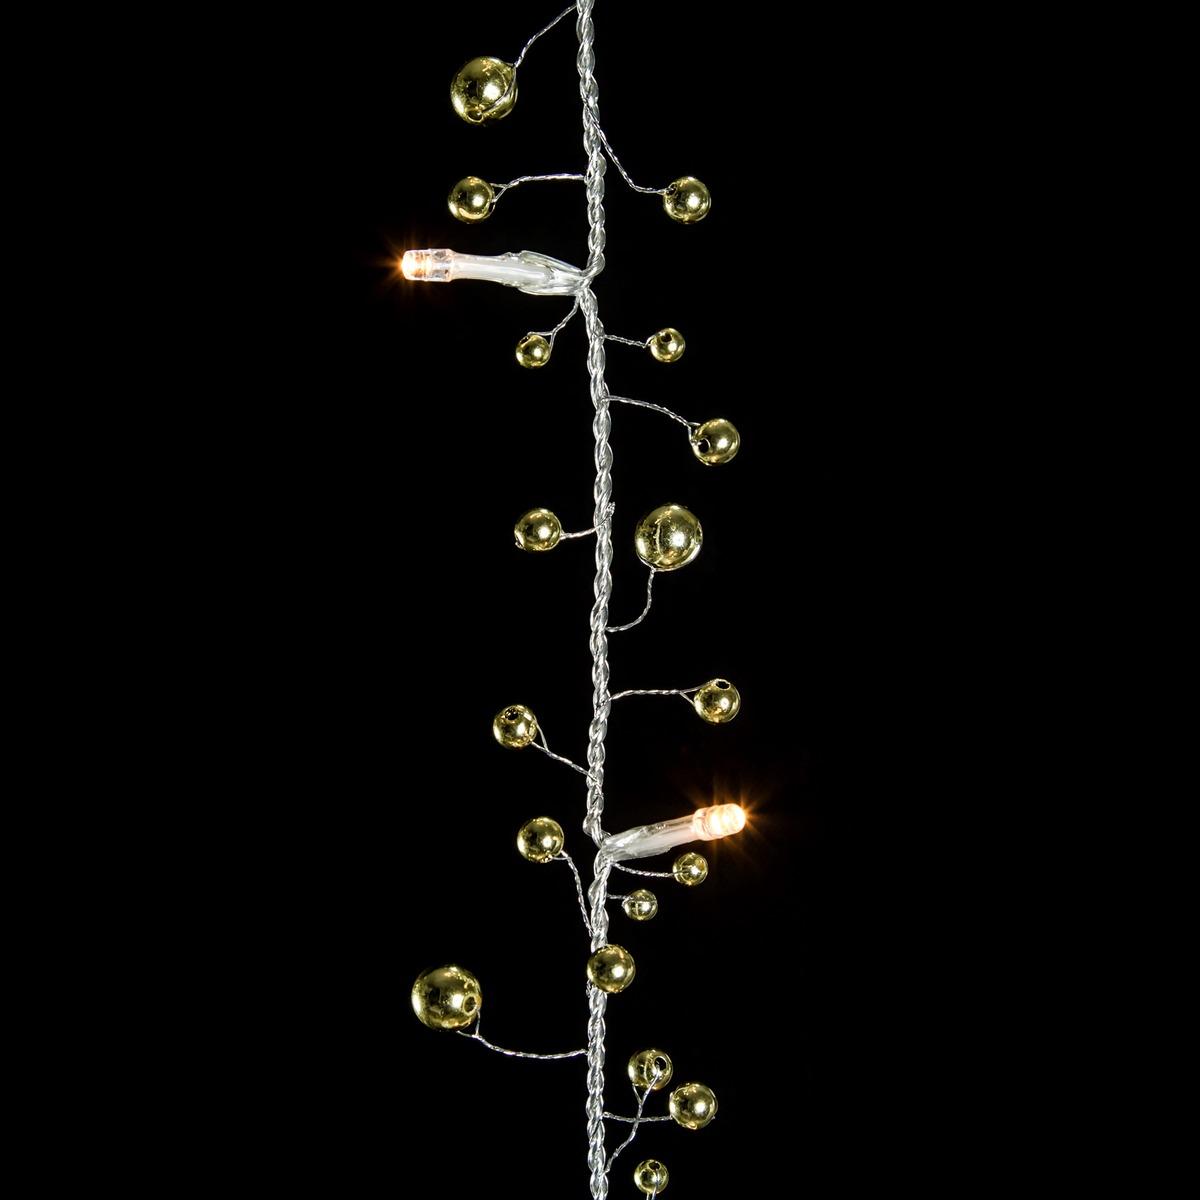 Guirlande électrique 20 led baies - Longueur 1,8 mètre - Blanc chaud et or